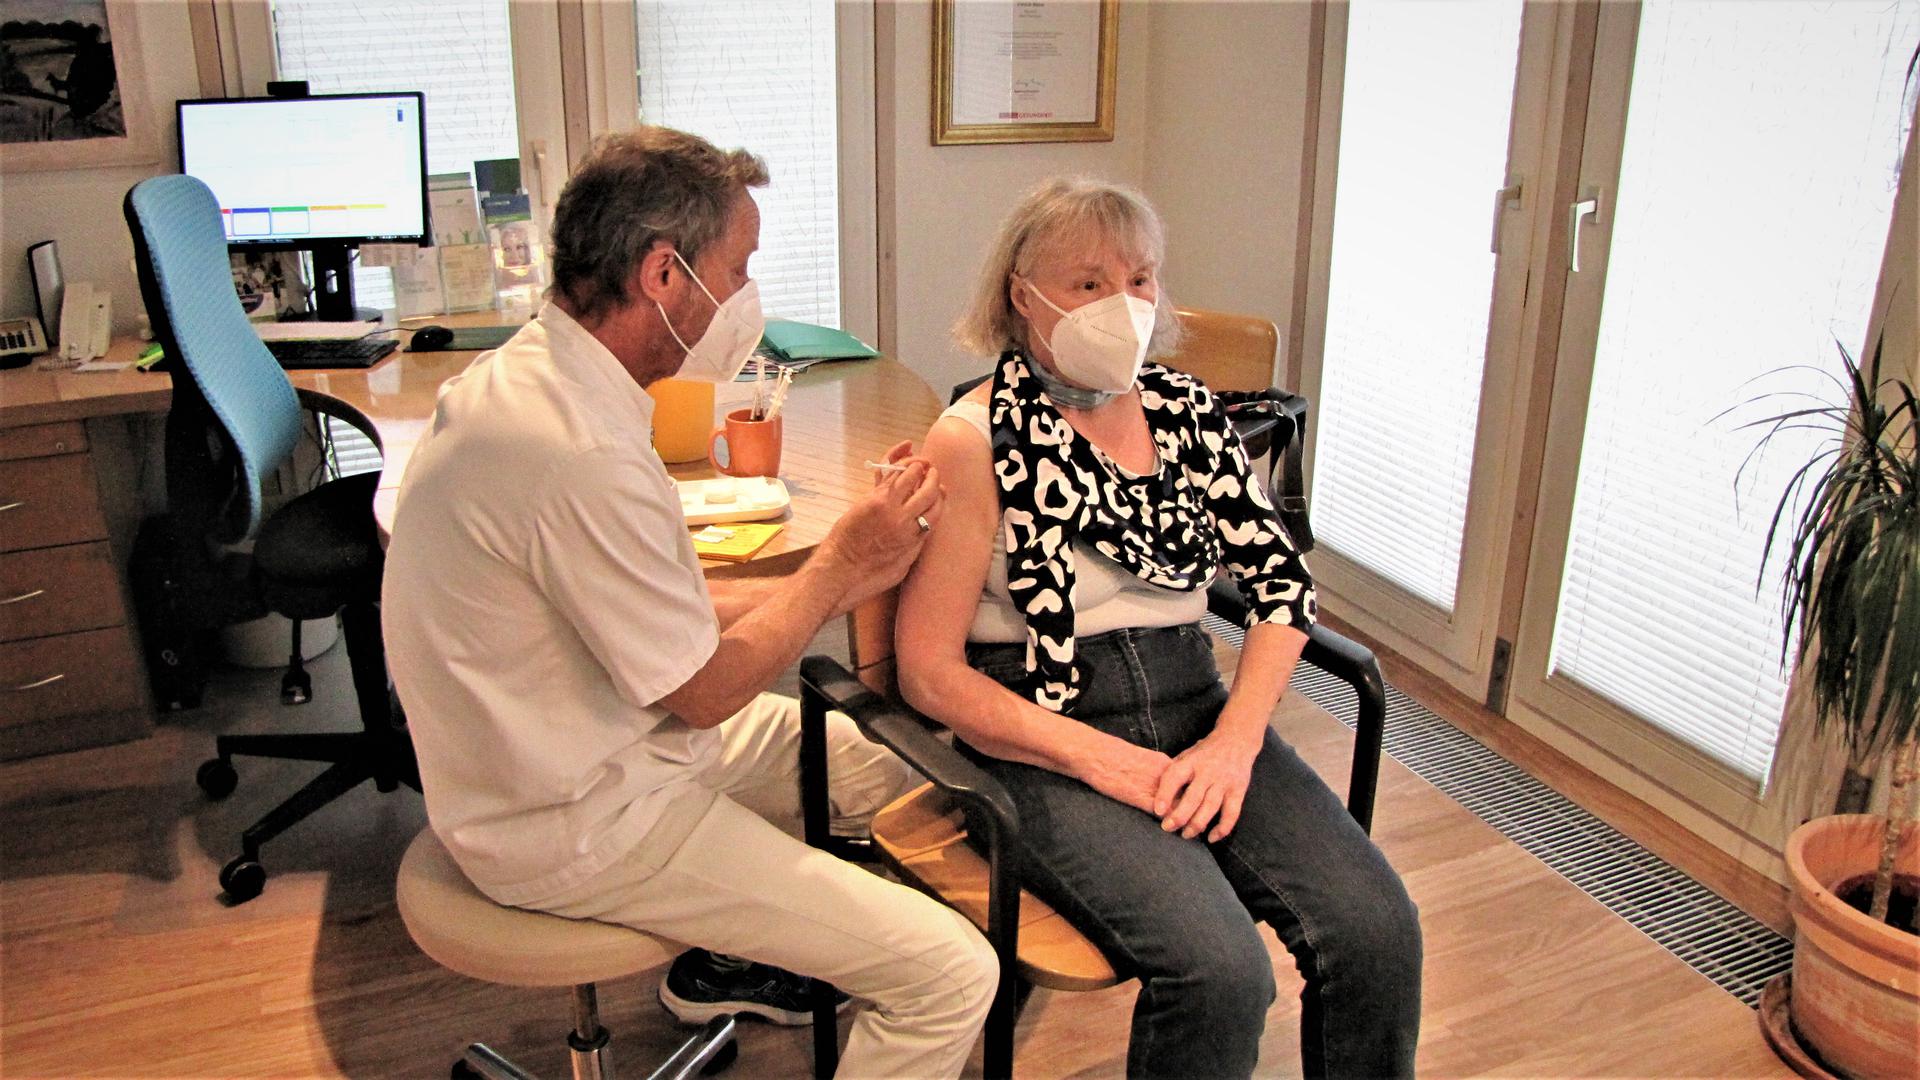 Von Patrick Näher bekommt Patientin Marlene Drewitz ihre Booster-Impfung.